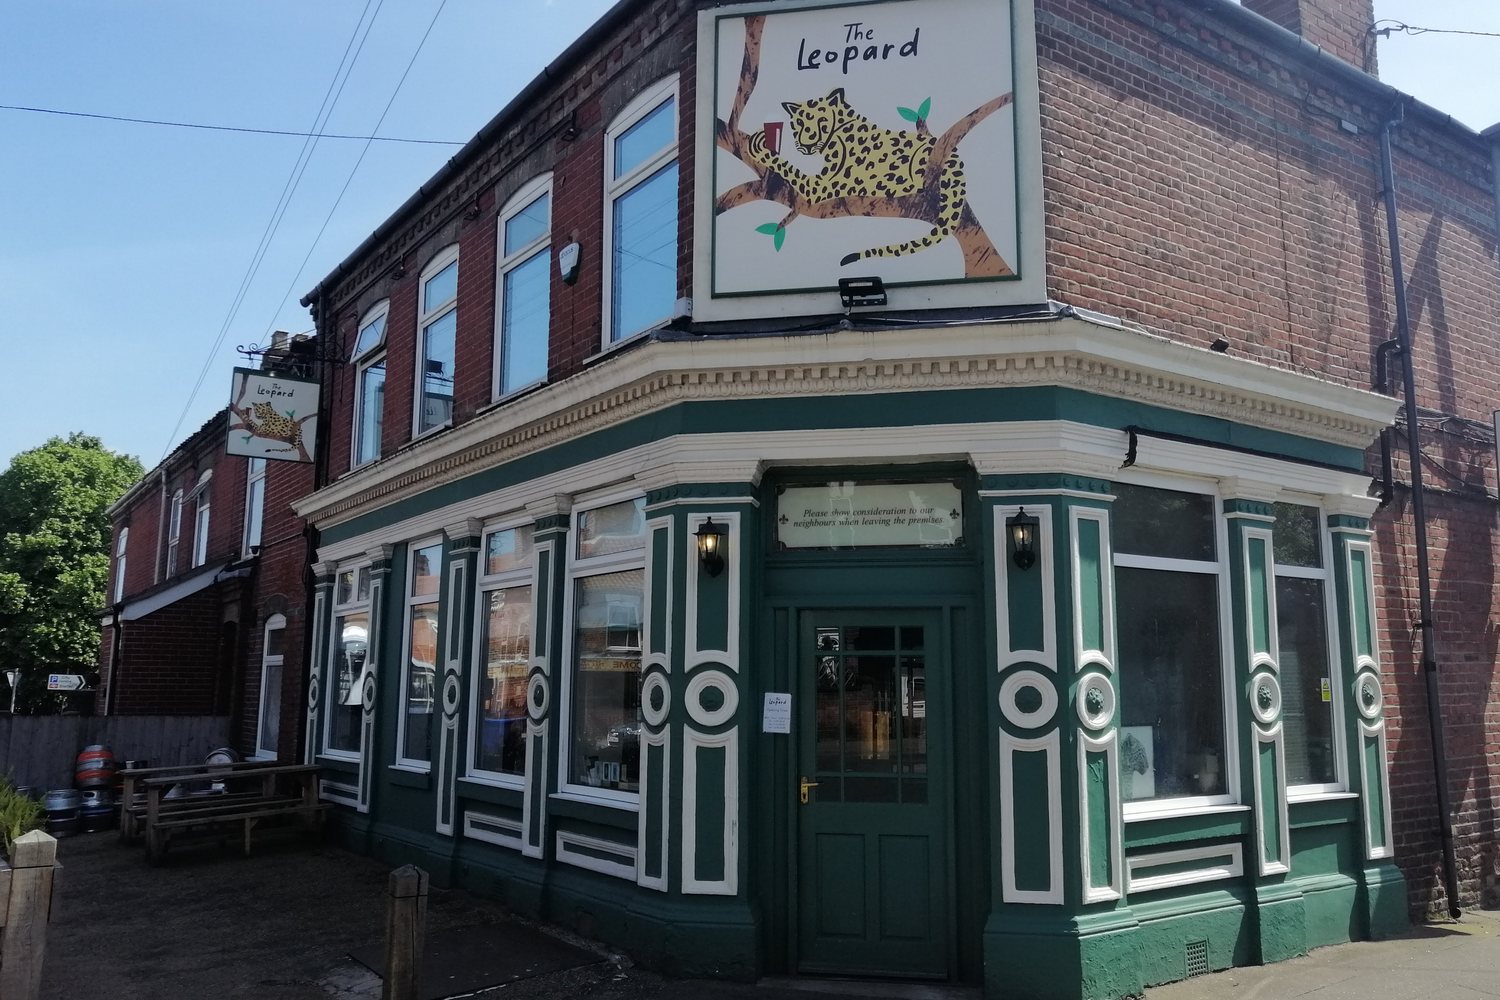 Norwich City of Ale: a small but perfect pub crawl